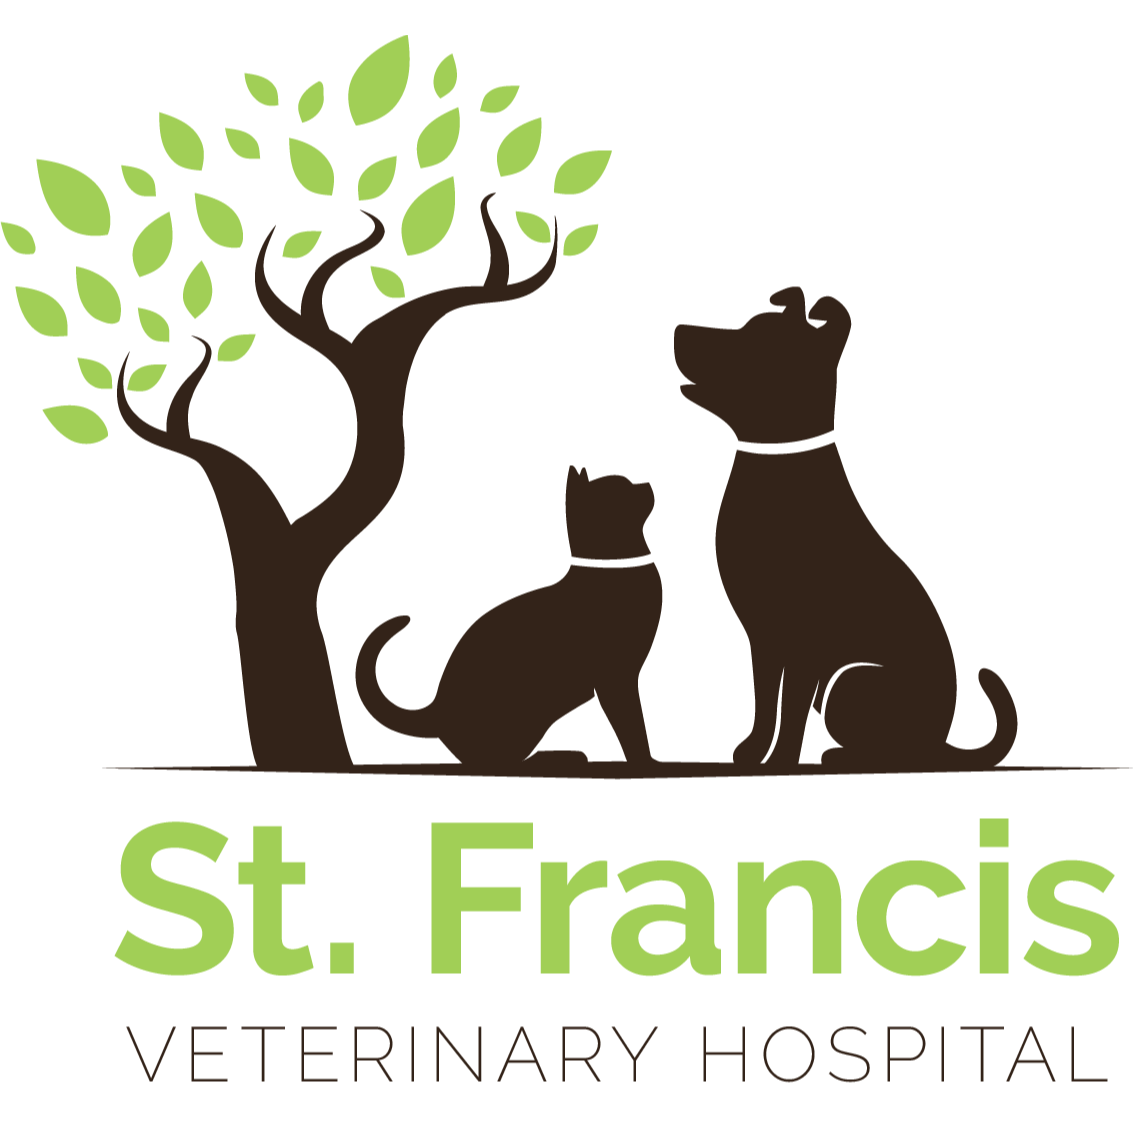 St. Francis Veterinary Hospital